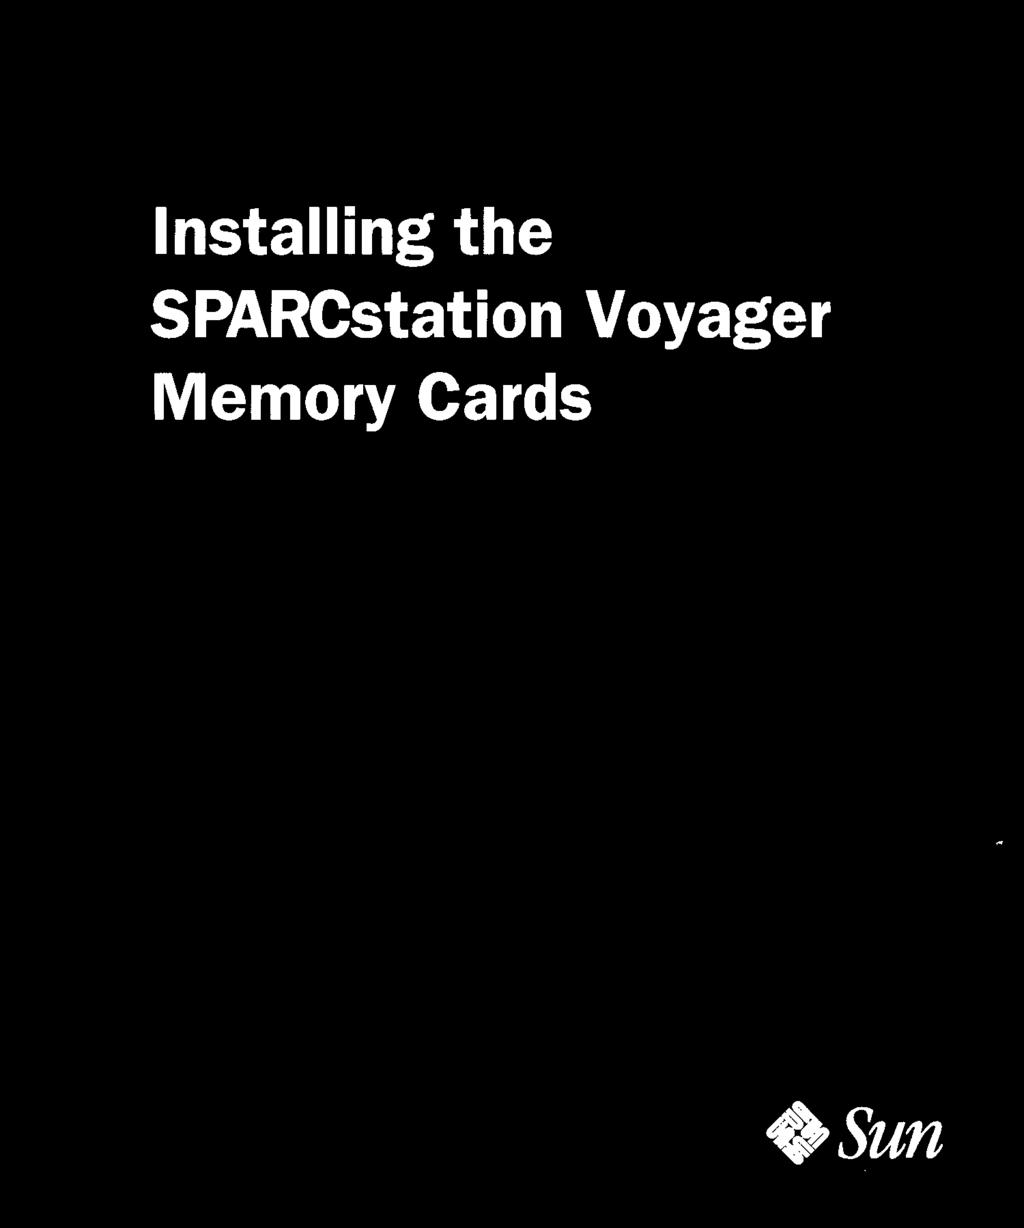 SPARCstation